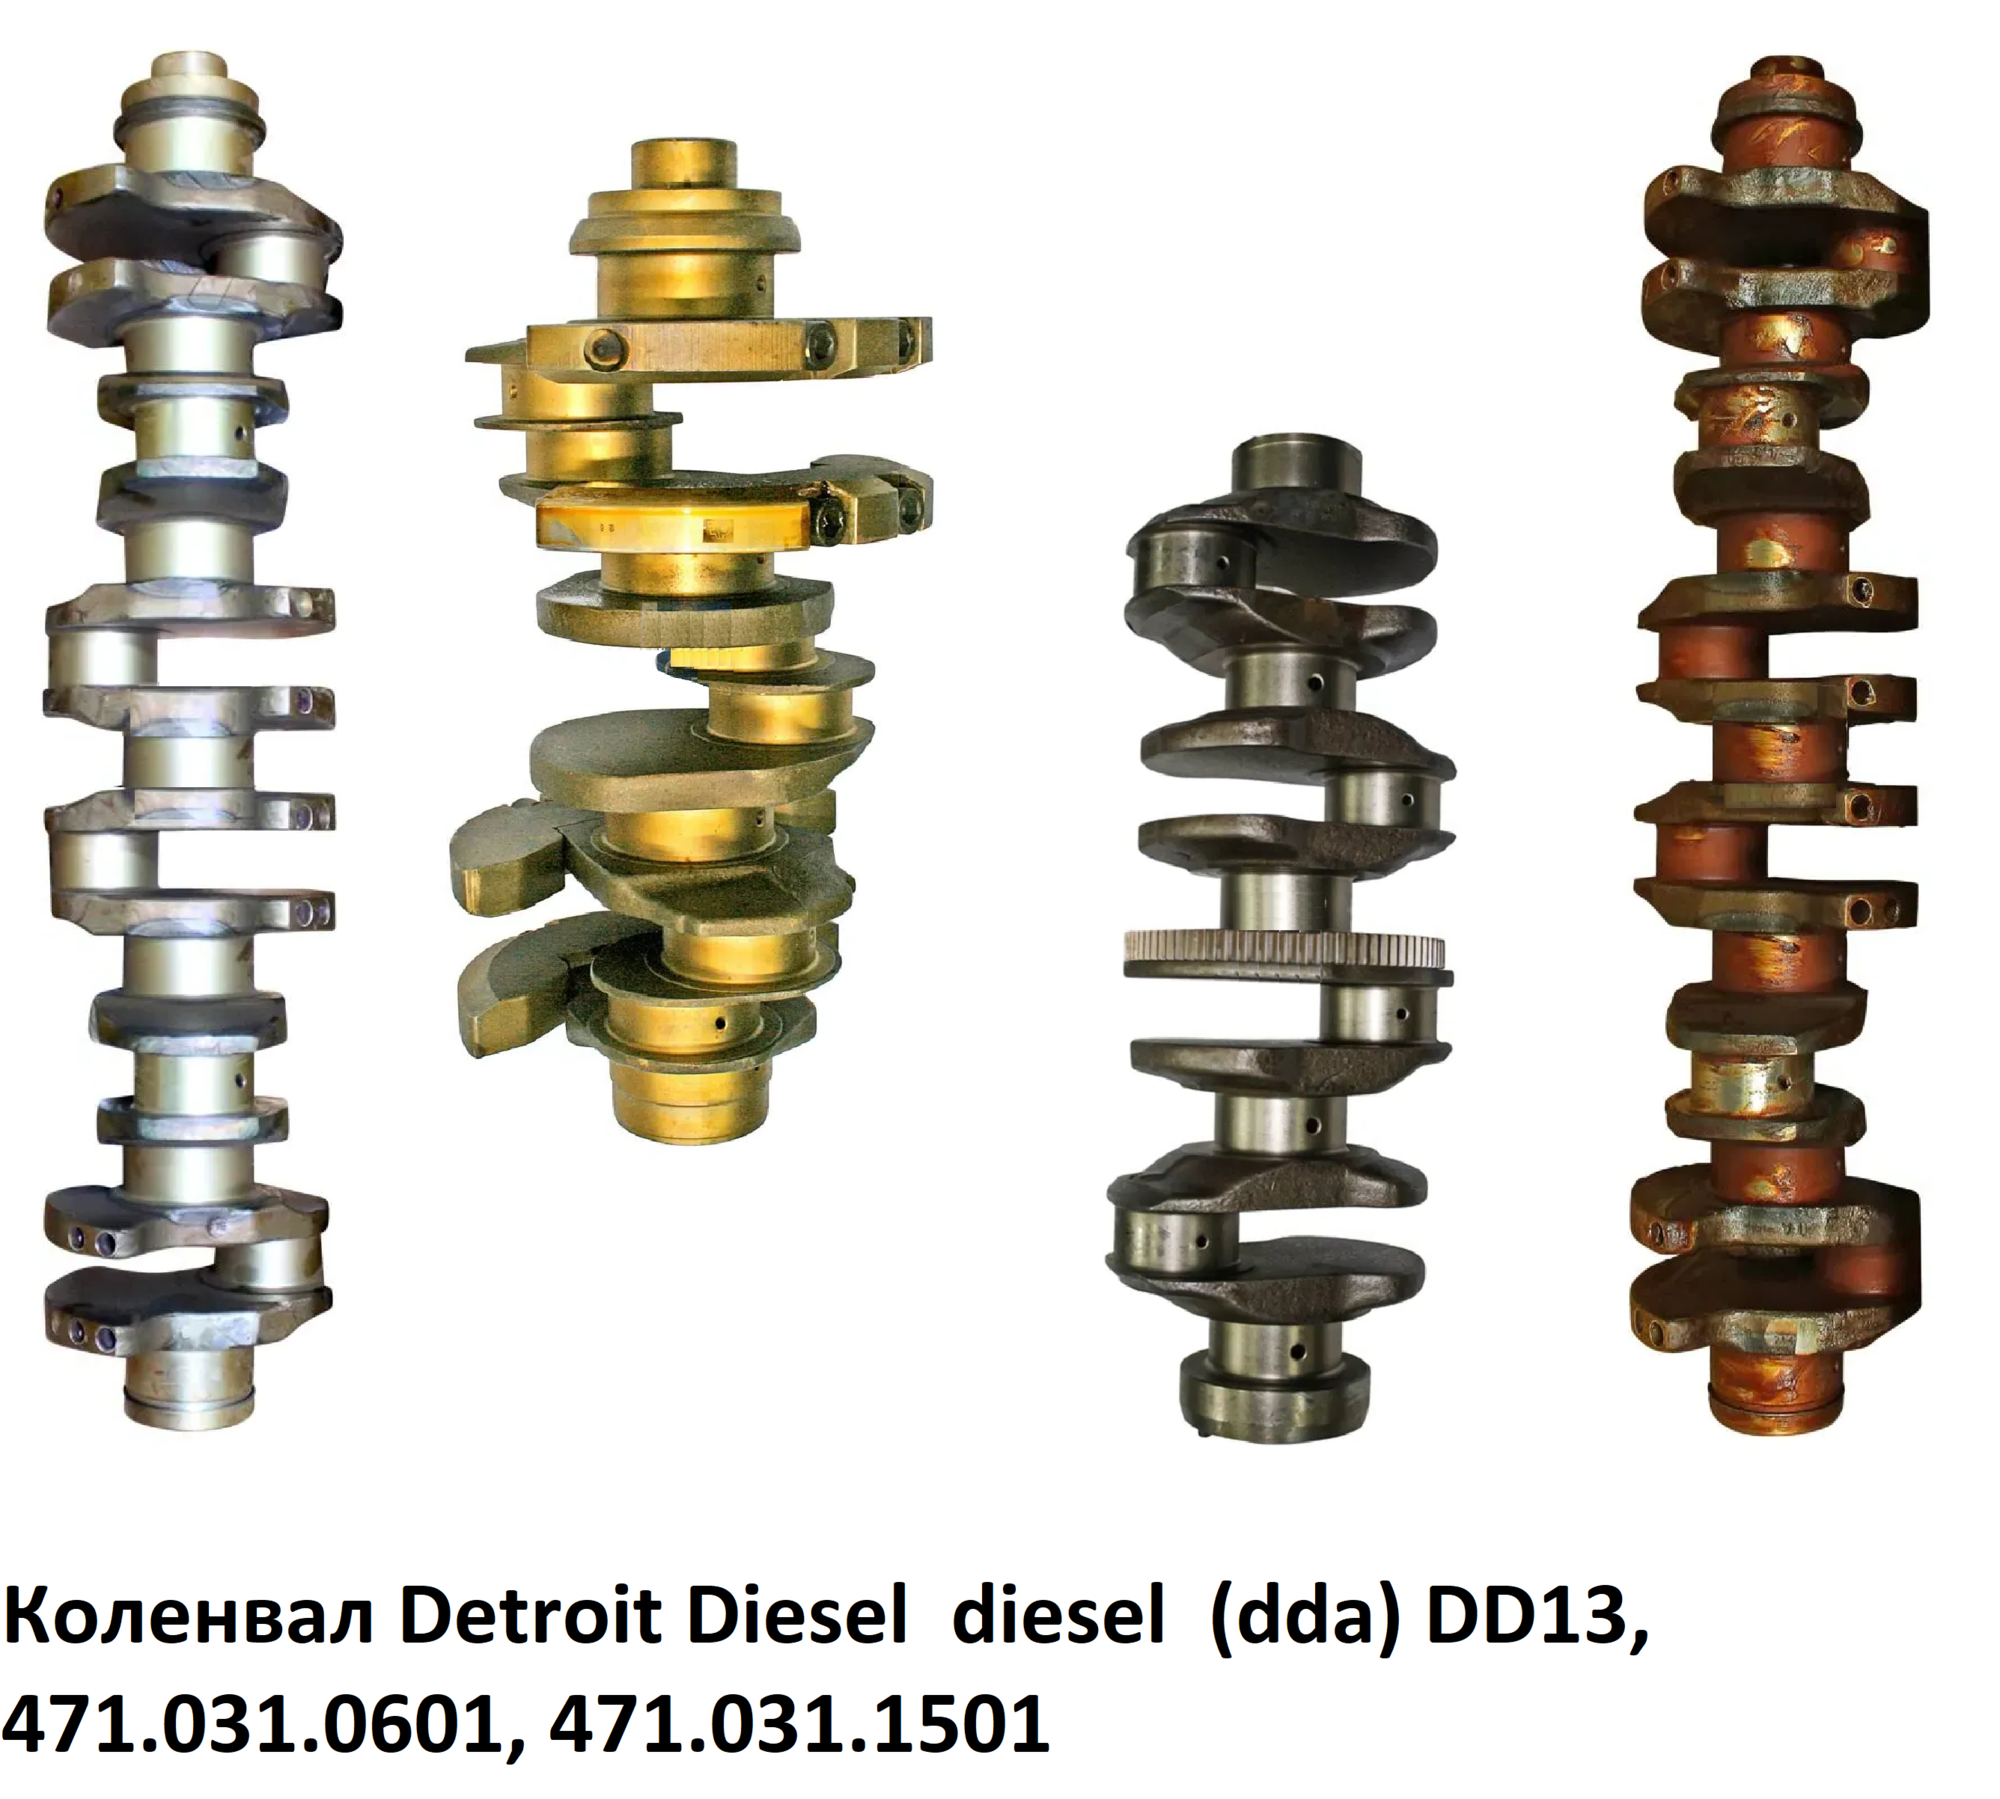 Коленвал Detroit Diesel dda DD13, 471.031.0601, 471.031.1501, 4710310601, 4710311501